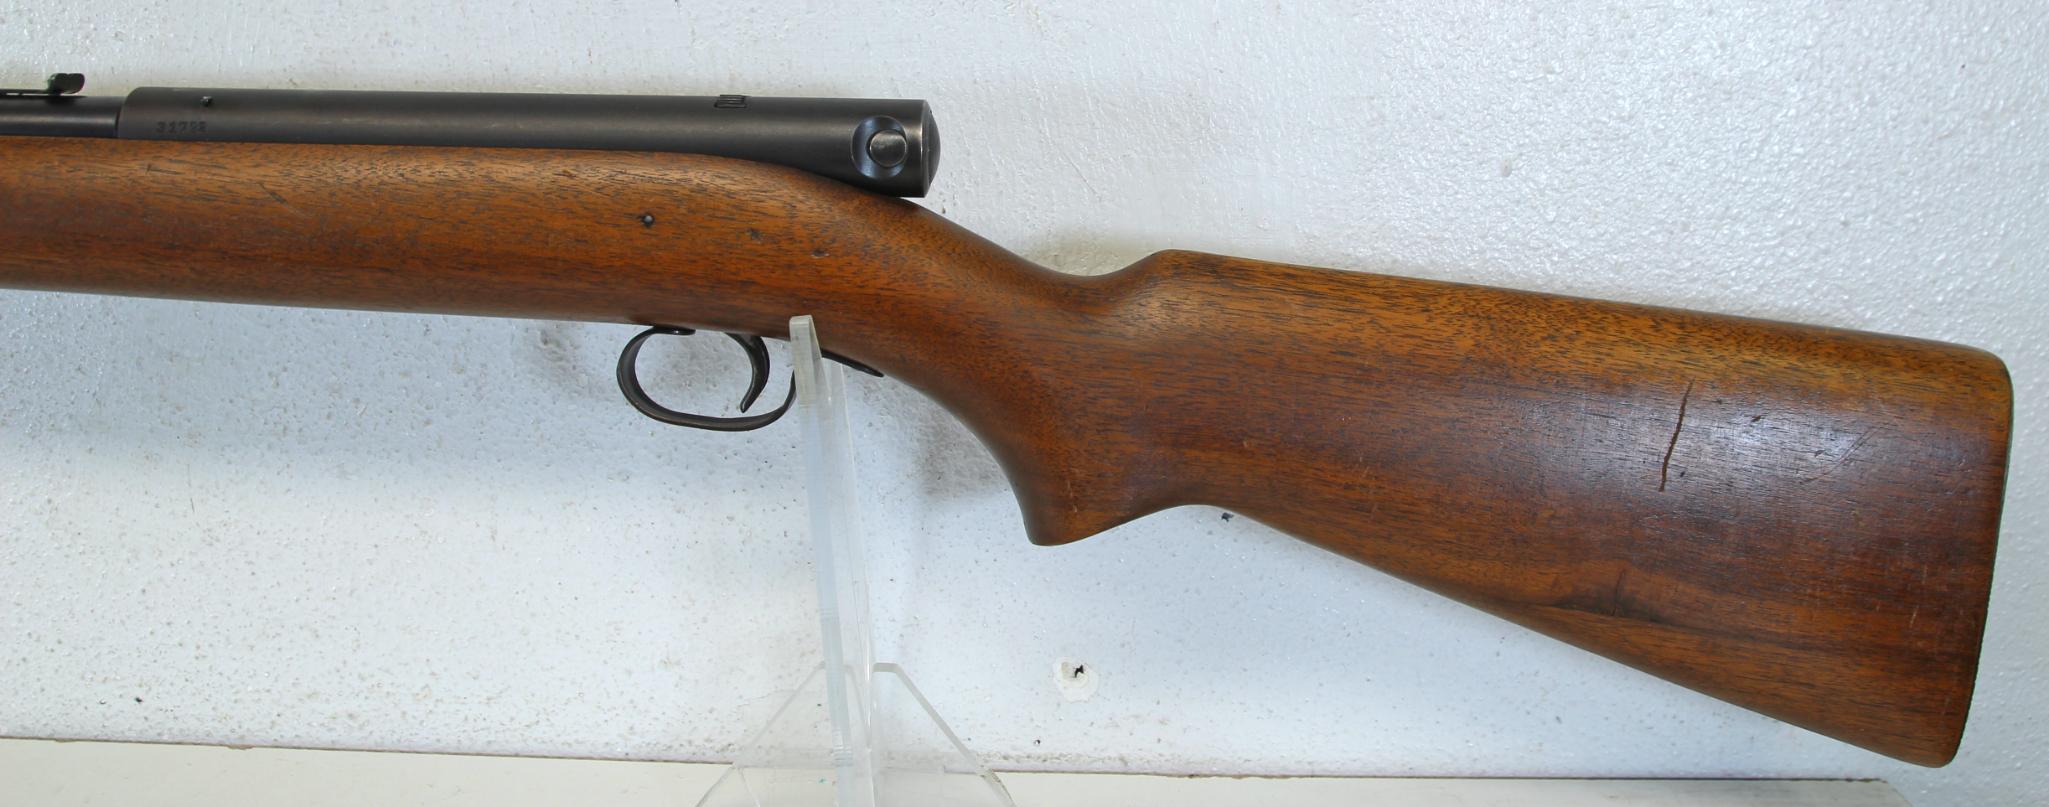 Winchester Model 74 .22 Short Semi-Auto Rifle SN#31792...